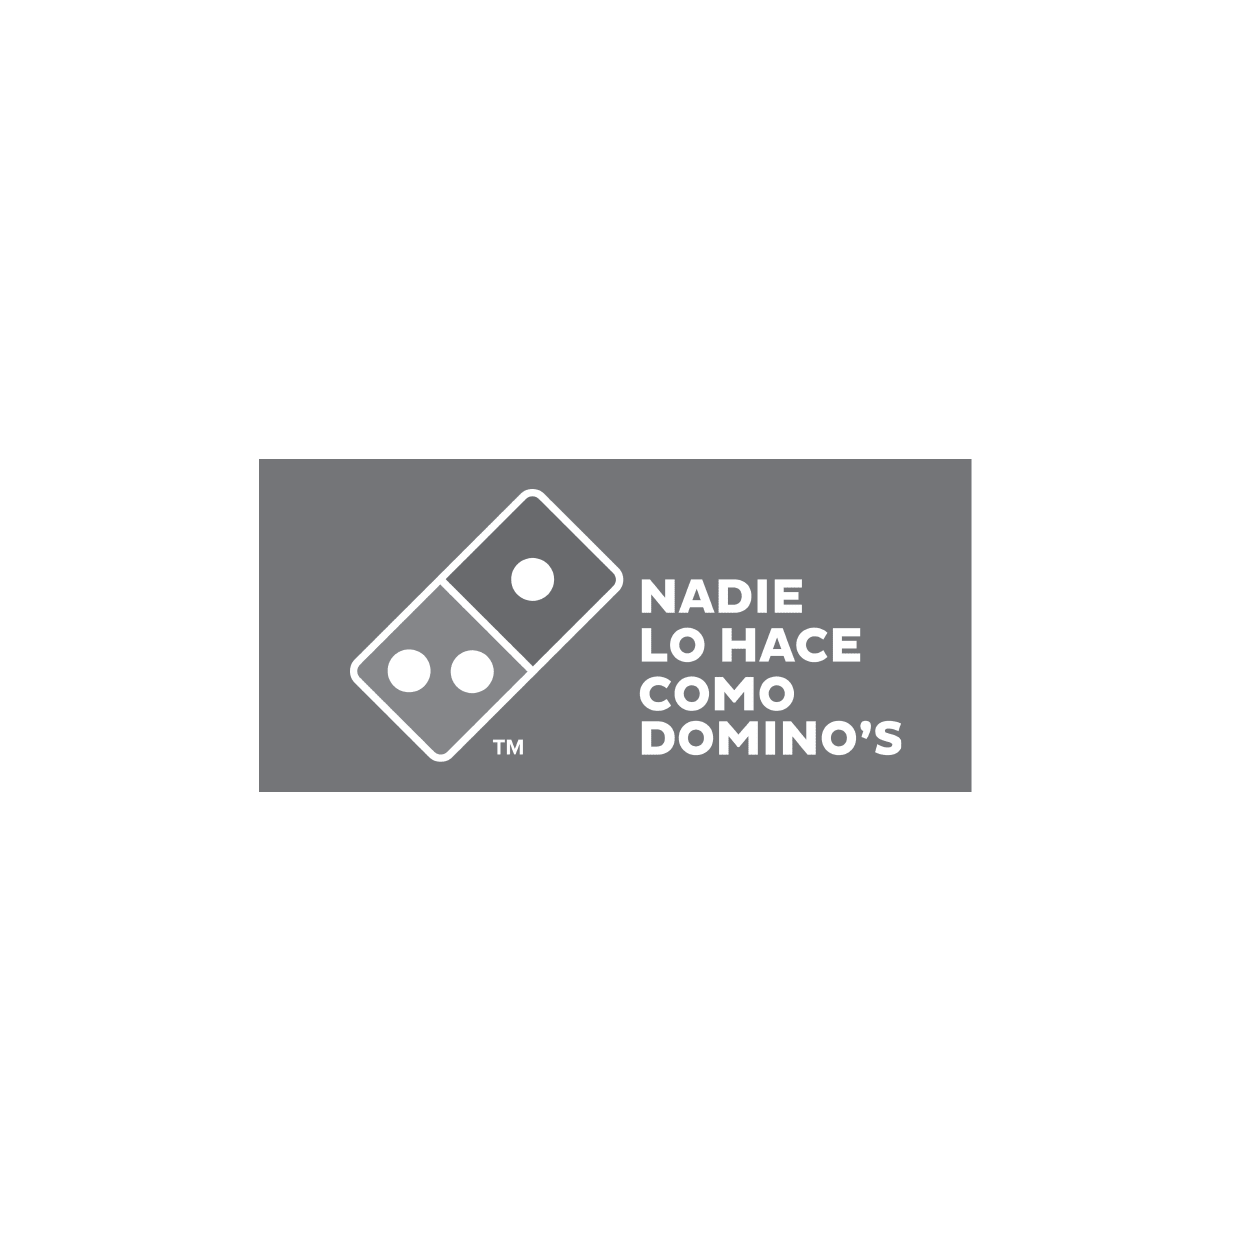 Logo Dominos Pizza